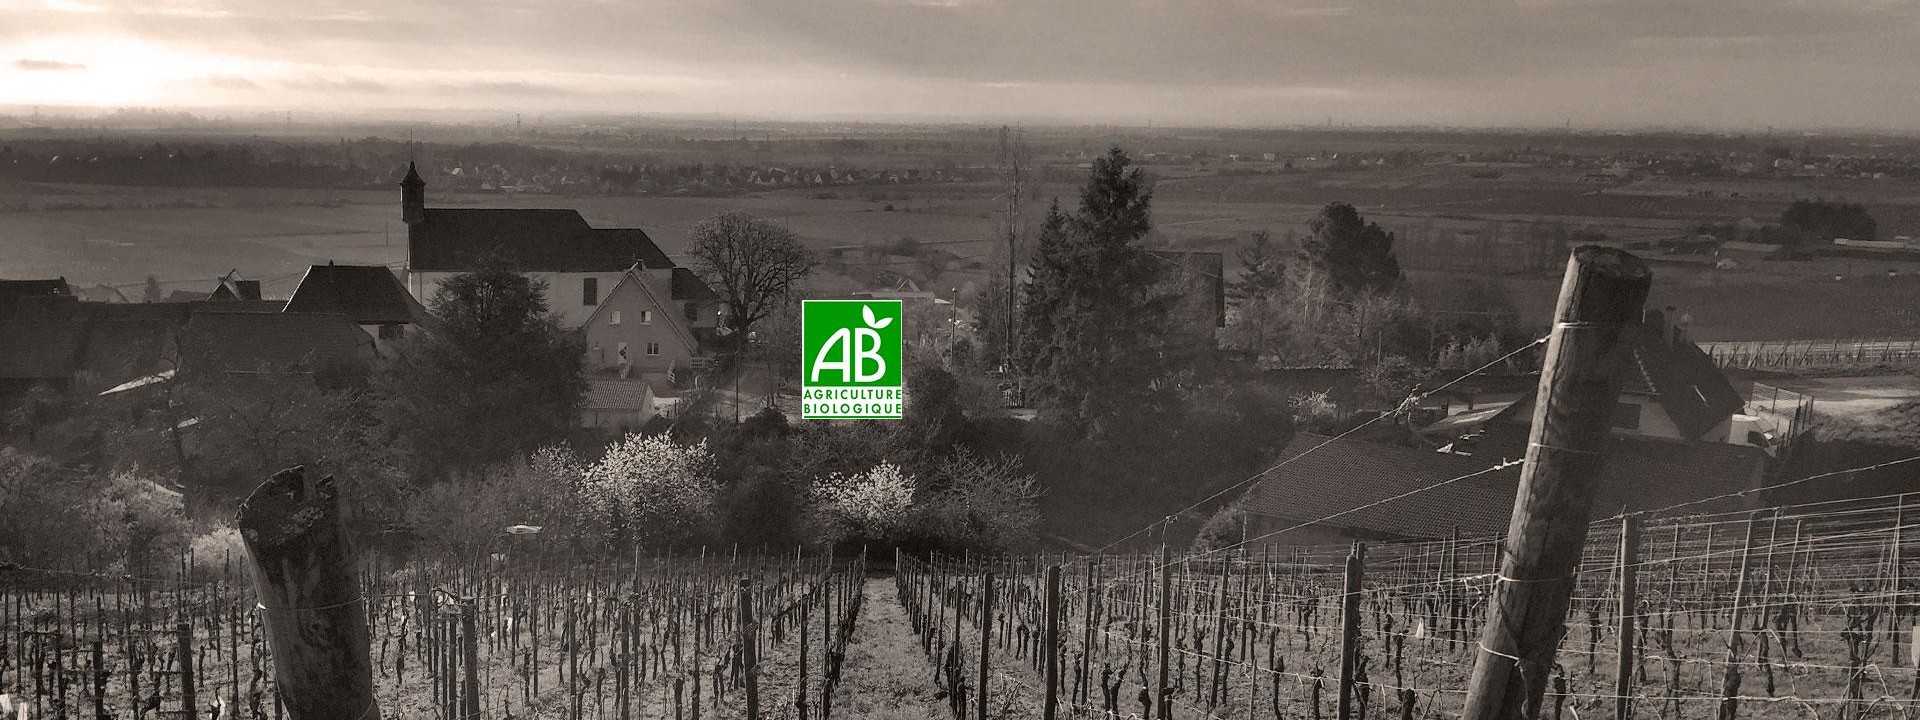 Vineyard of Alsace wines Pernet et Fils in Dambach-la-ville in the Bas-Rhin, along the wine road